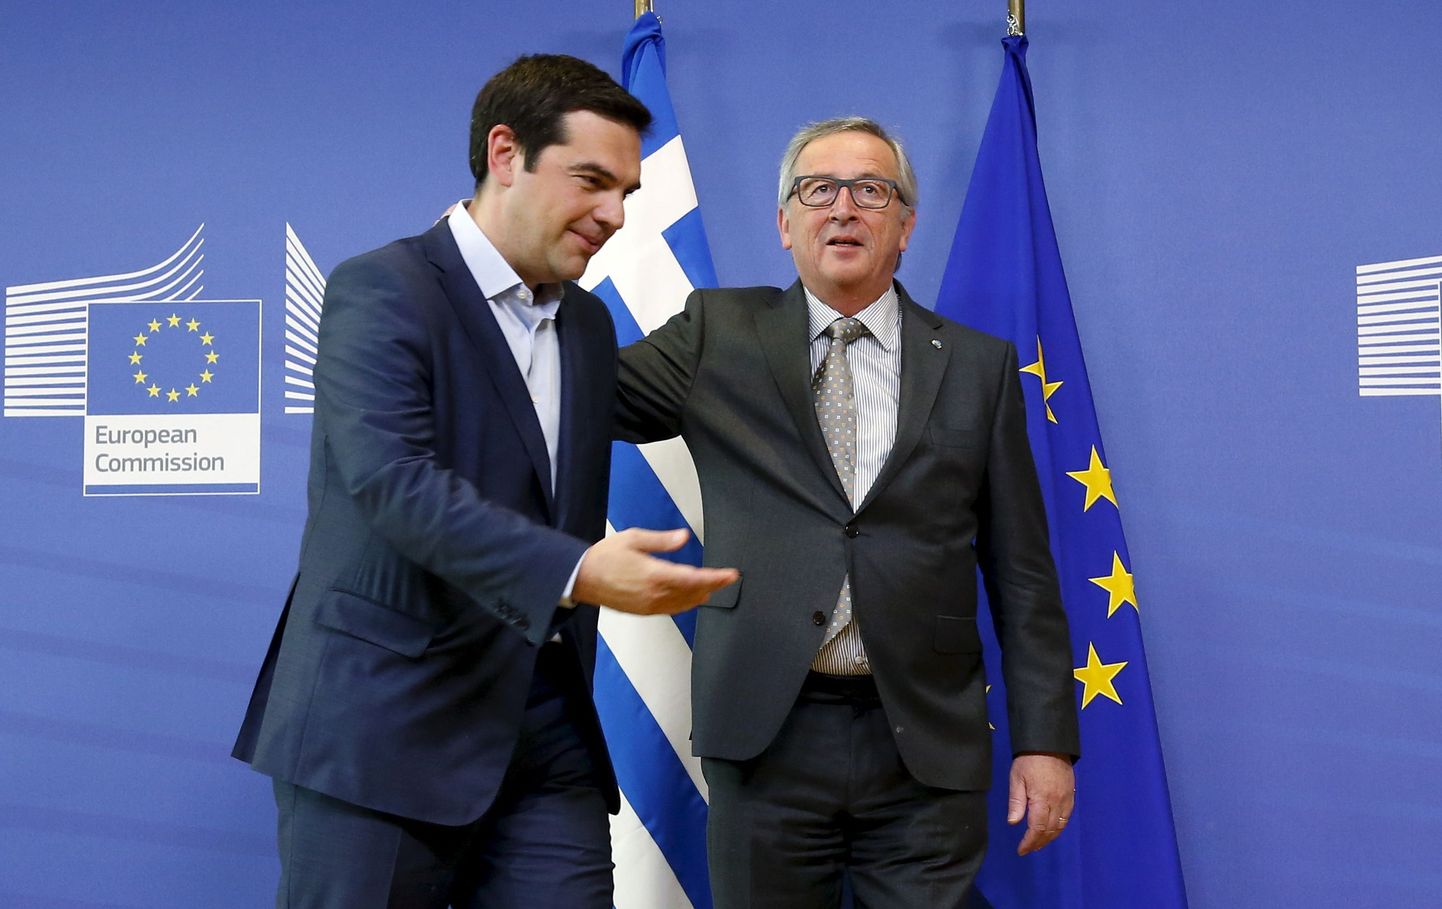 Kreeka peaminister Alexis Tsipras (vasakul) käis kolmapäeval Euroopa Komisjoni presidendi Jean-Claude Junckeri jutul, et kaubelda Kreekale soodsamaid tingimusi.